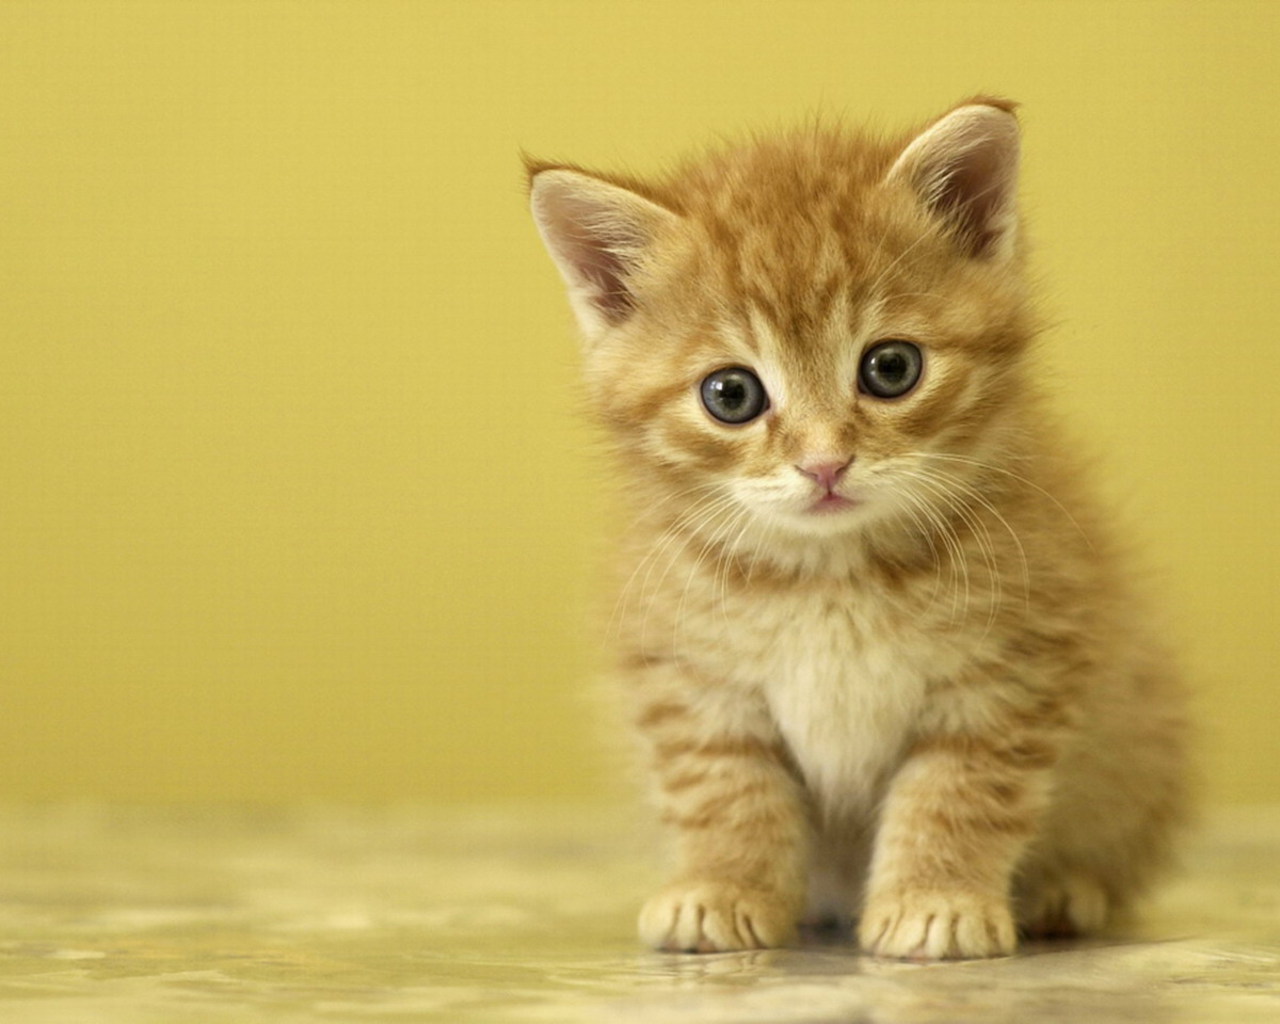 Little cute kitten